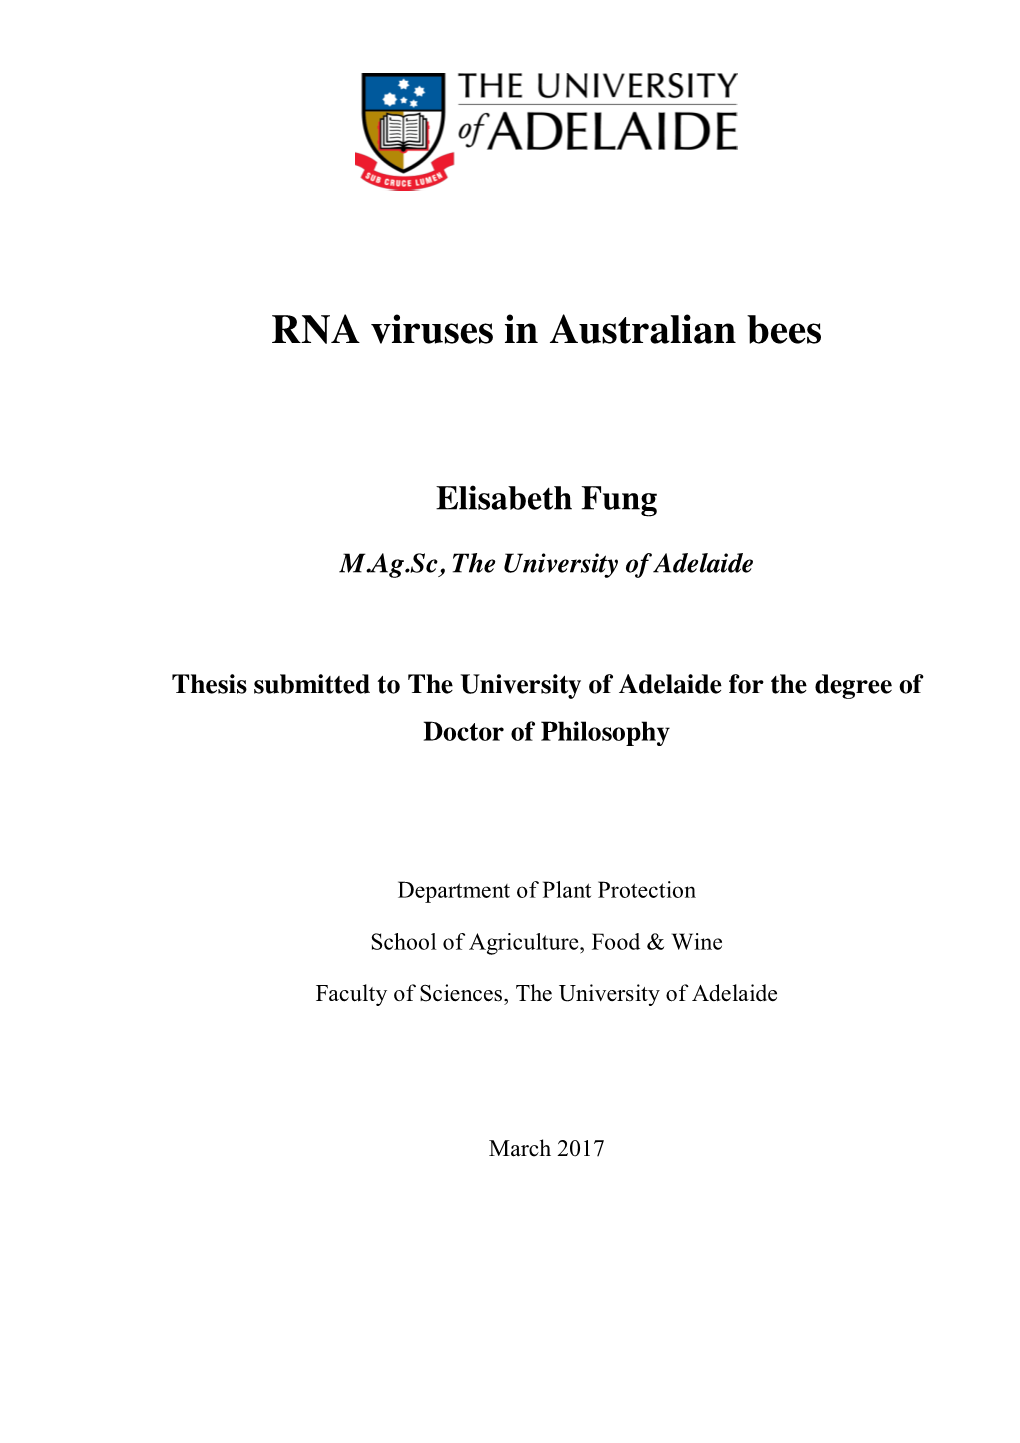 RNA Viruses in Australian Bees